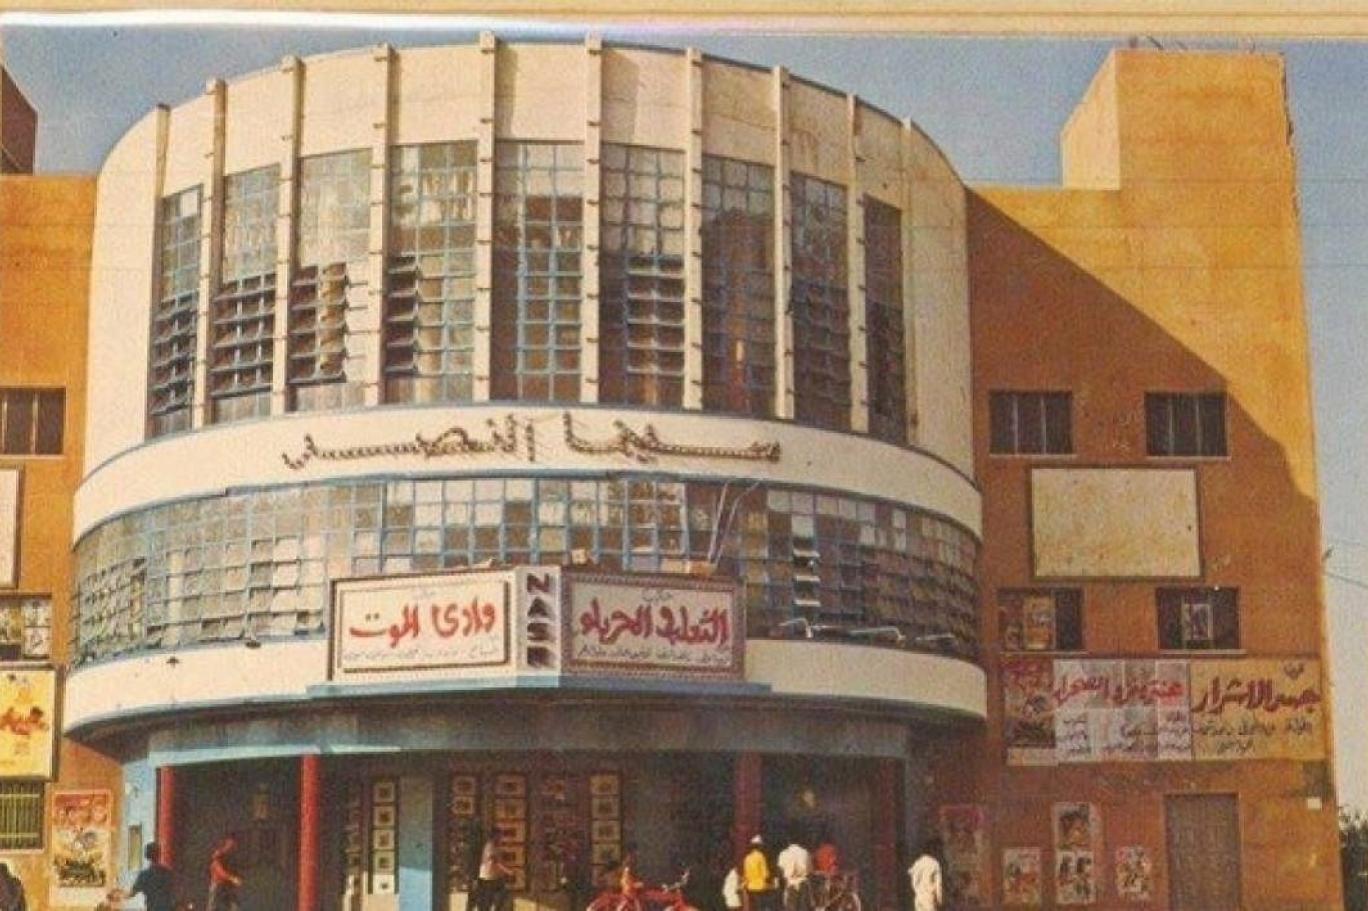 33 سنة... على مشهد نهاية دور السينما في غزة | اندبندنت عربية